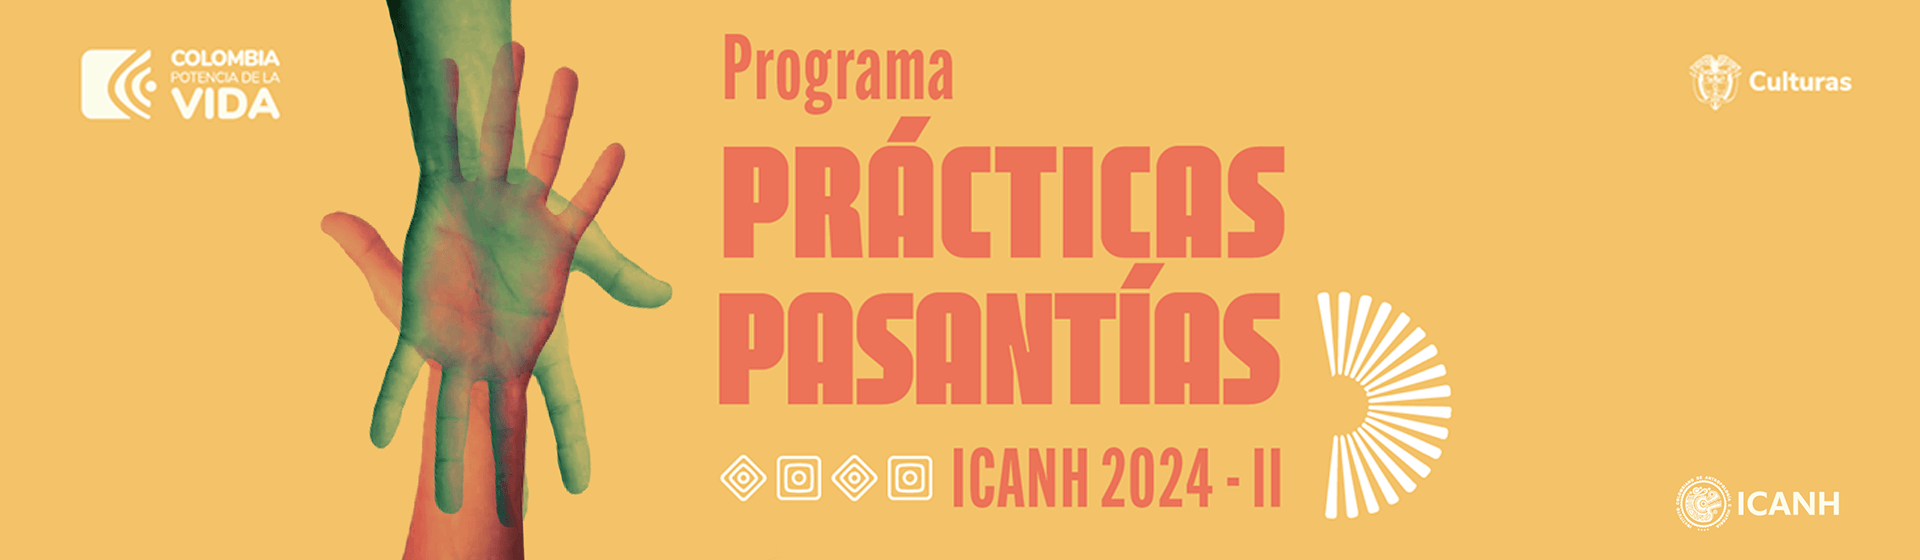 Convocatoria al Programa de Prácticas y Pasantías ICANH 2024 - II